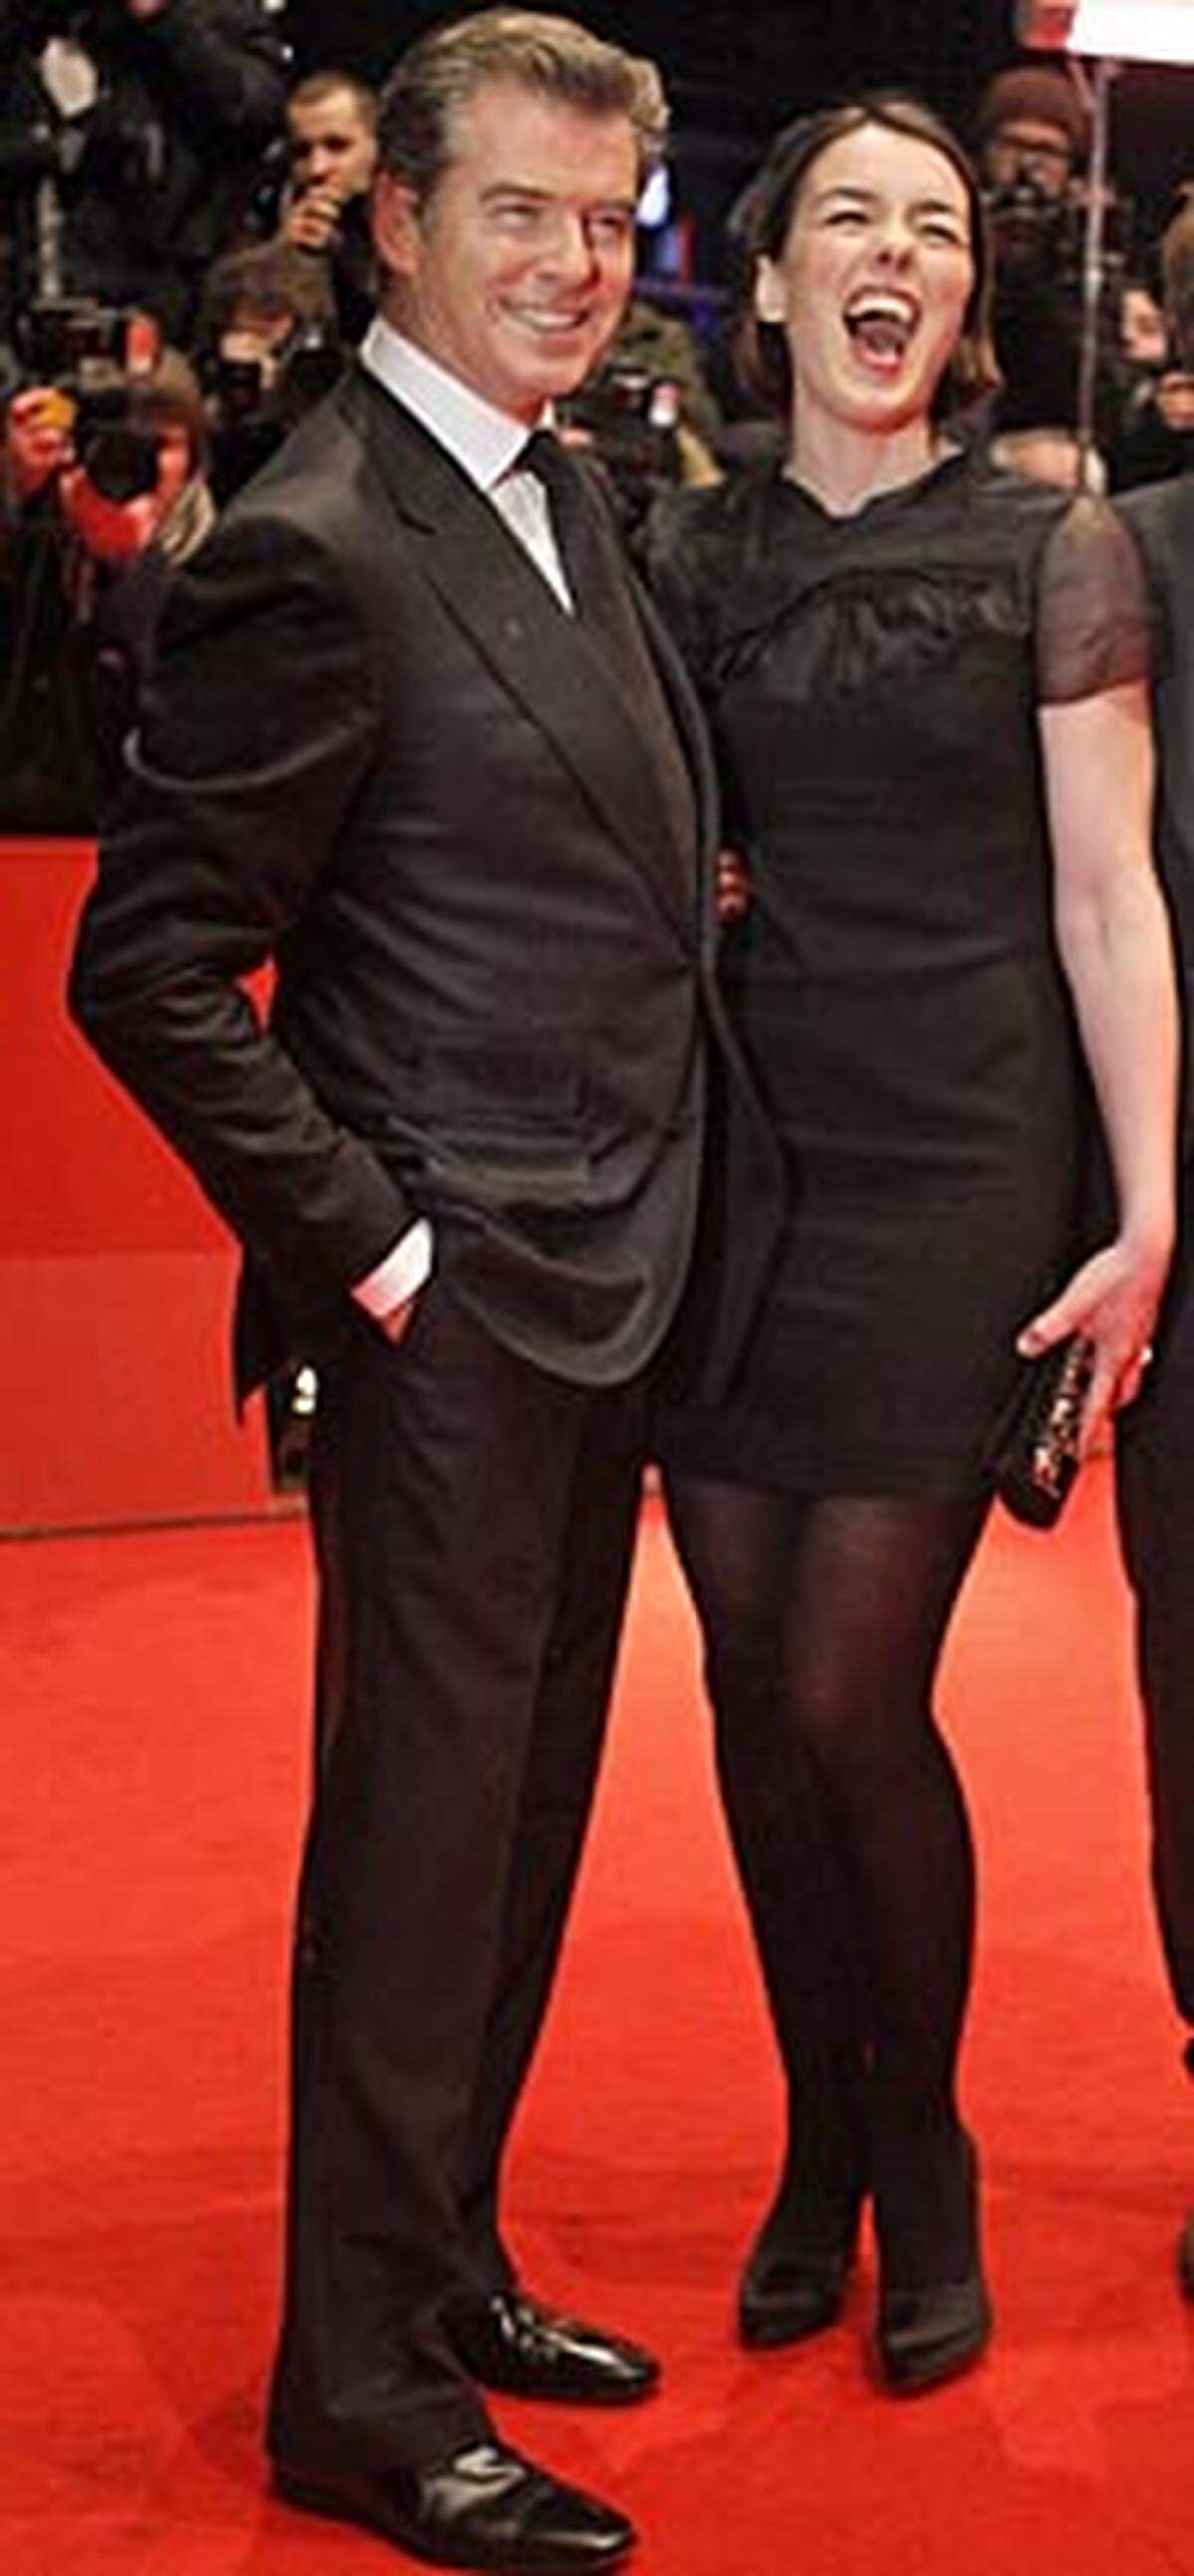 Ebenfalls zahlreich erschienen waren die Darsteller aus dem neuen Polanski-Film "The Gost Writer": Pierce Brosnan und Olivia Willliams hatten am Red Carpet sichtlich viel Spaß.